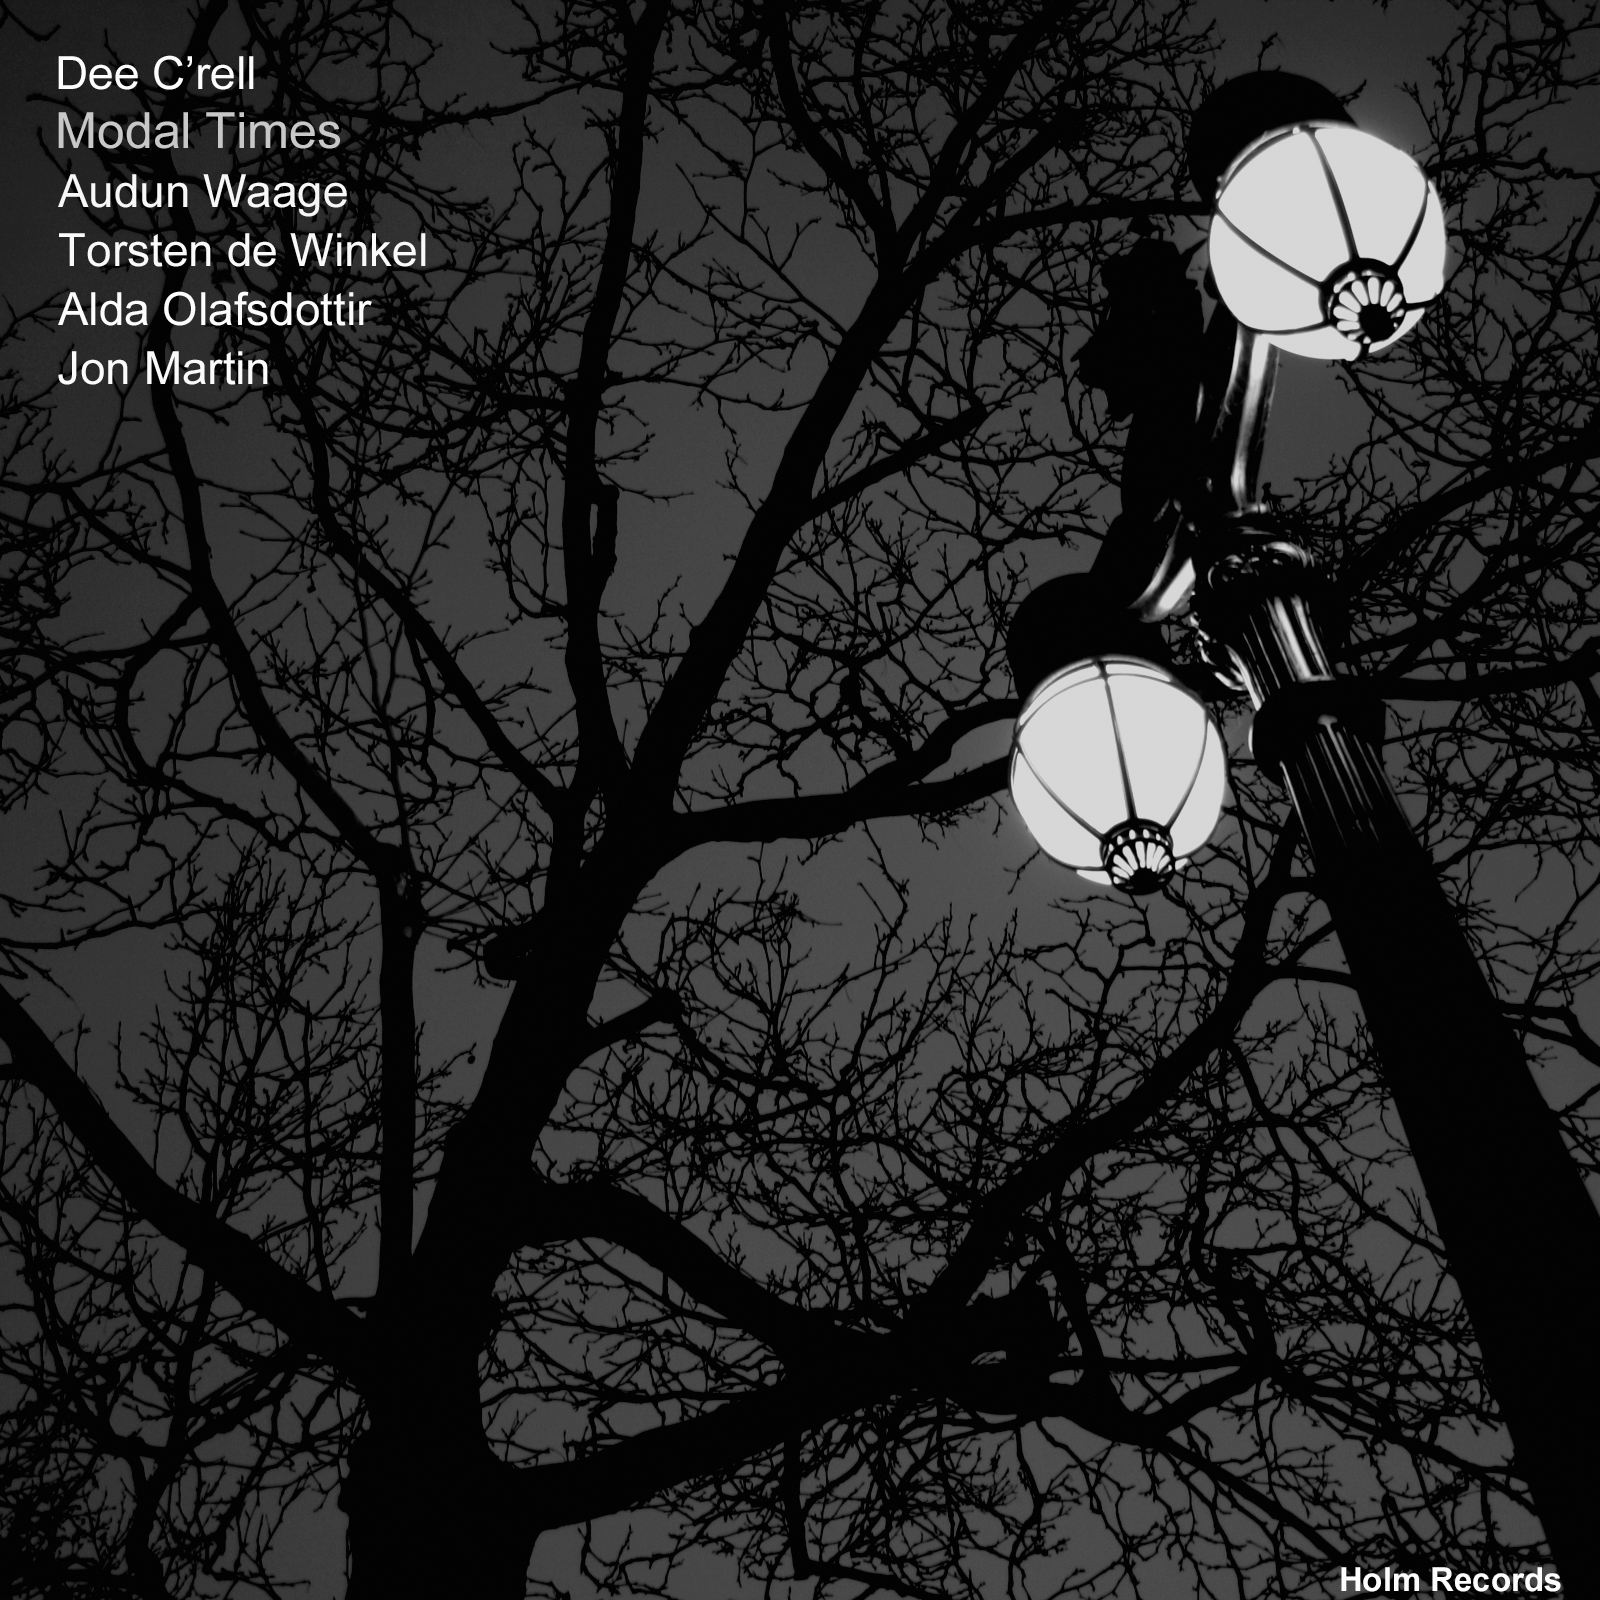 Dee C'rell Featuring Audun Waage, Jon Martin - Modal Times (Dee C'rell Edit Mix).